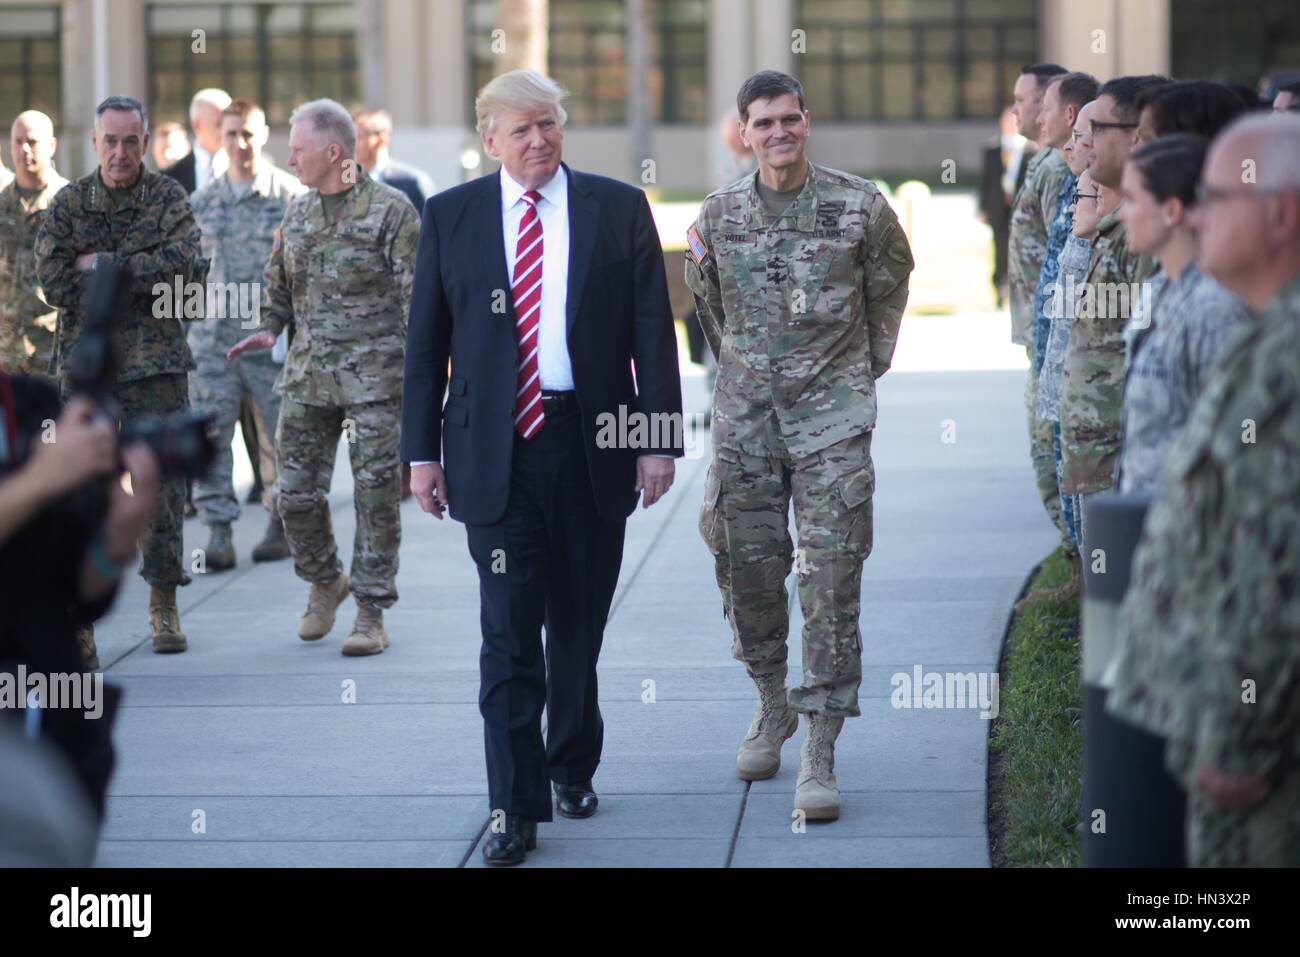 Presidente estadounidense Donald Trump camina pasado escoltados por soldados del Ejército de EE.UU. Gen. Joseph Votel durante una visita al Comando Central de EE.UU. en la base de la Fuerza Aérea MacDill, 6 de febrero de 2017 en Tampa, Florida. Crédito: Planetpix/Alamy Live News Foto de stock